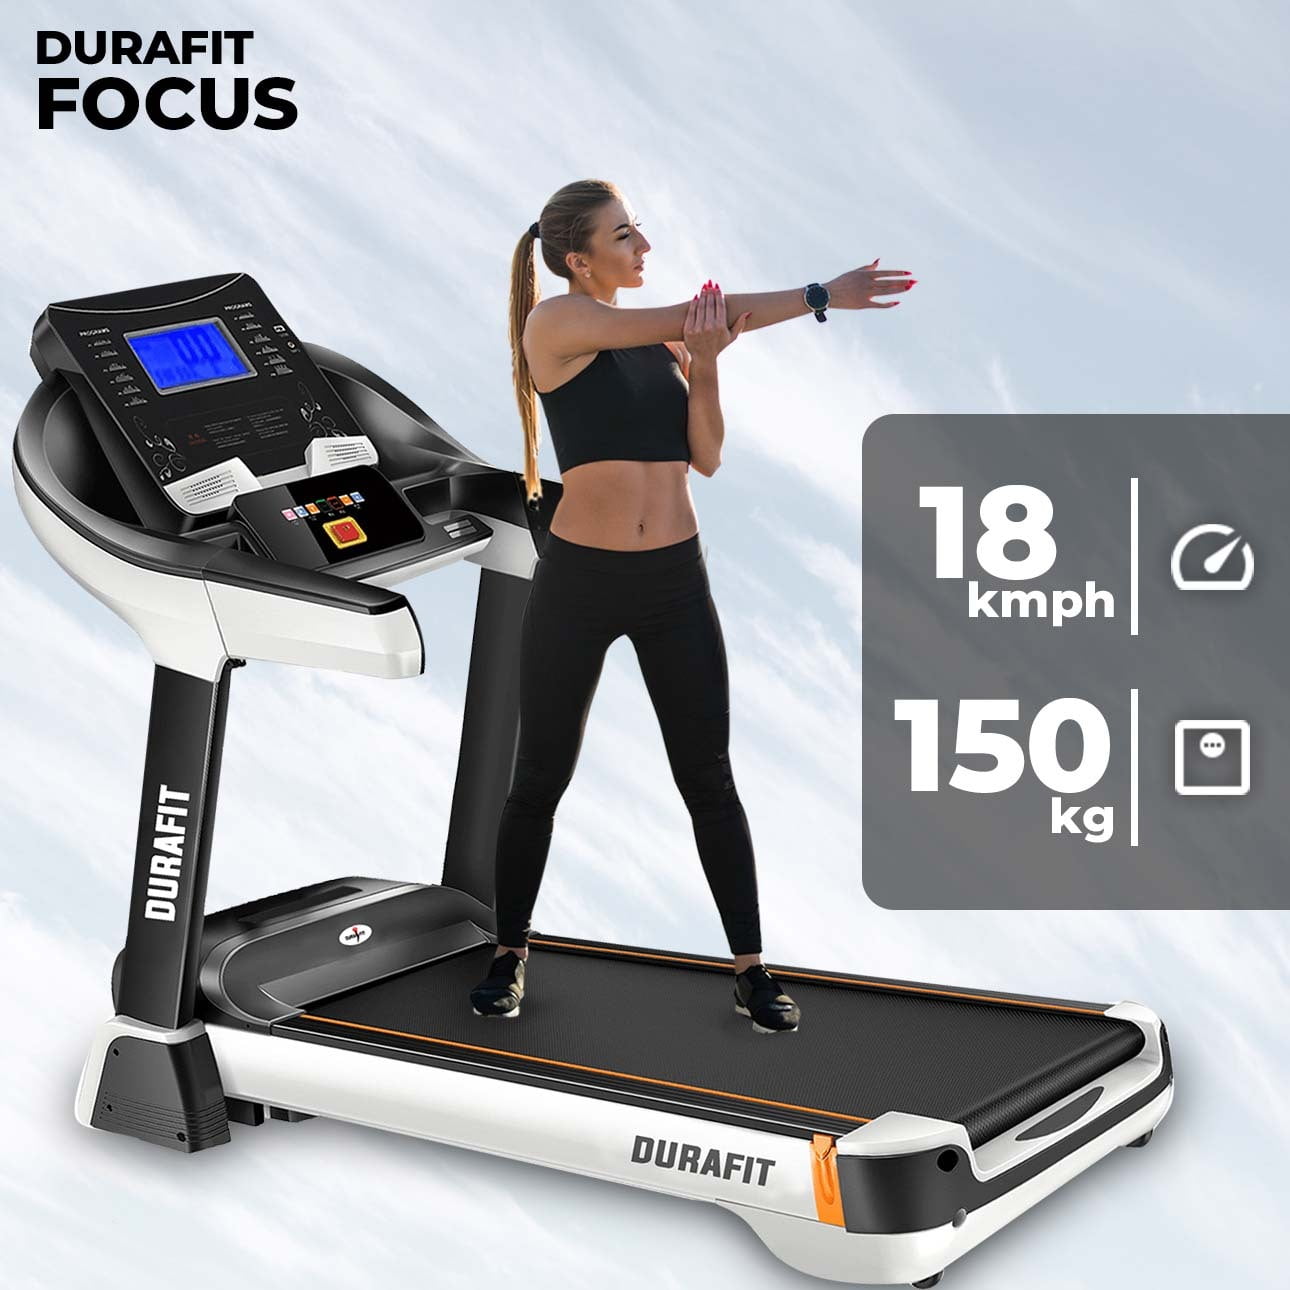 Durafit Focus Treadmill